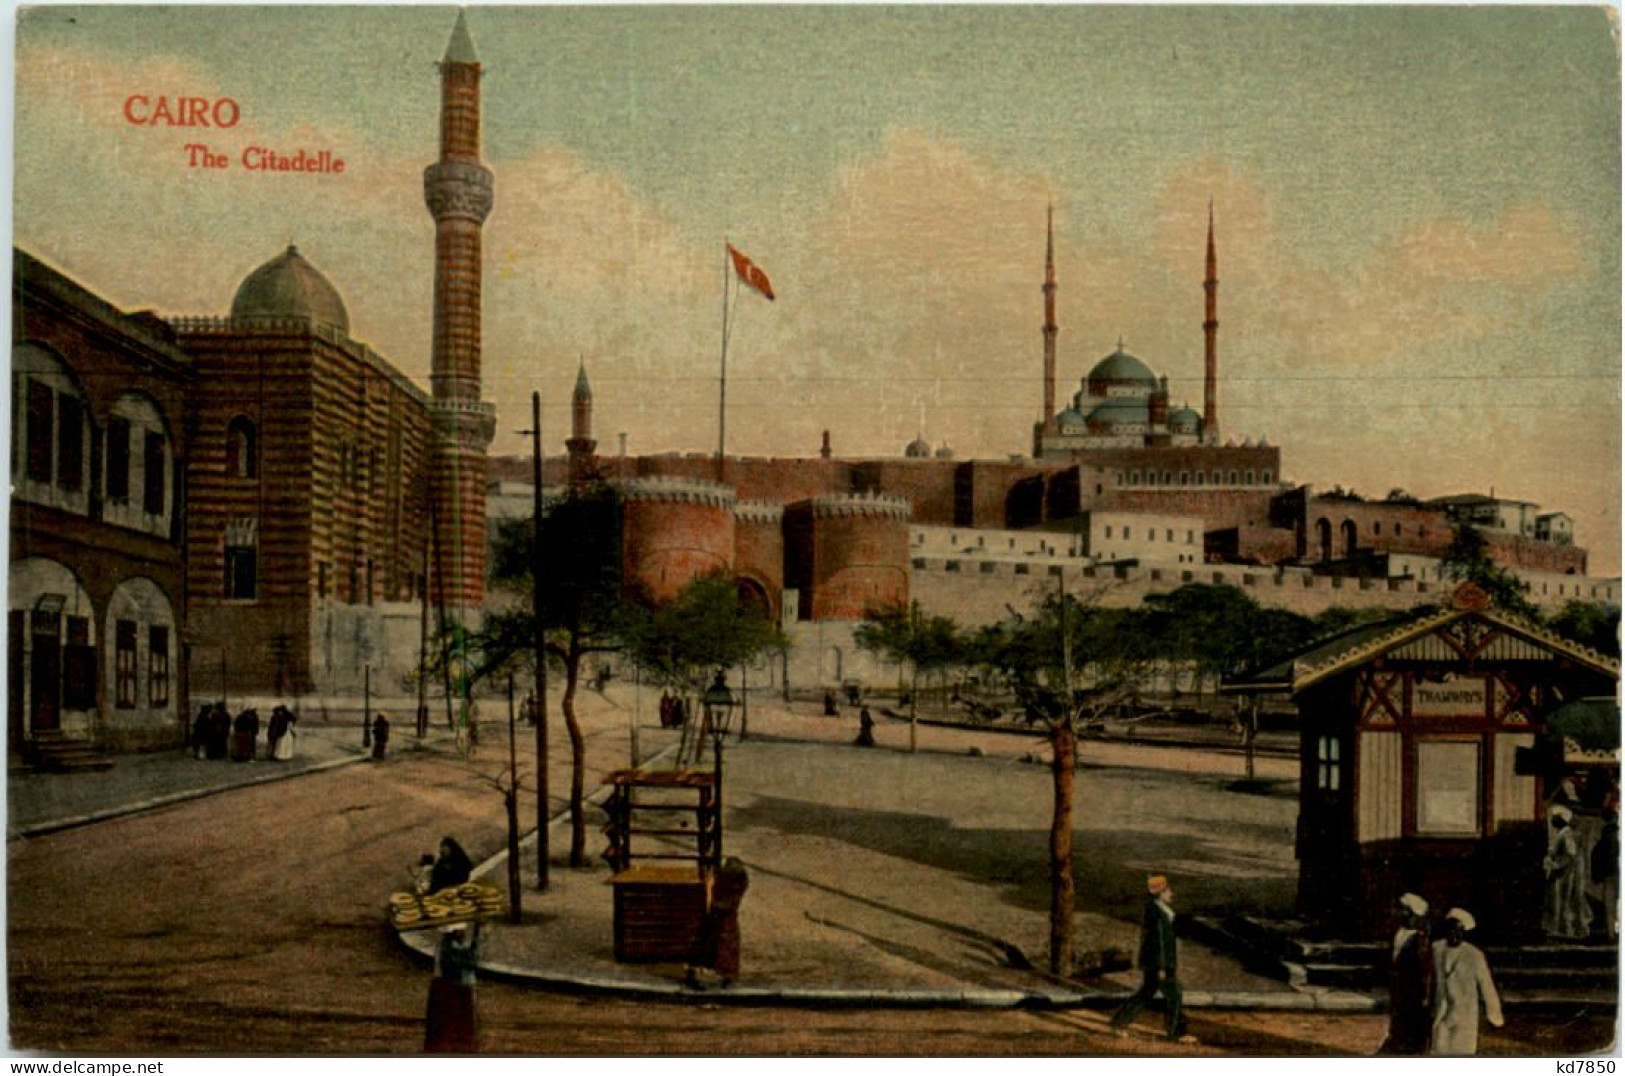 Cairo - The Citadelle - Caïro